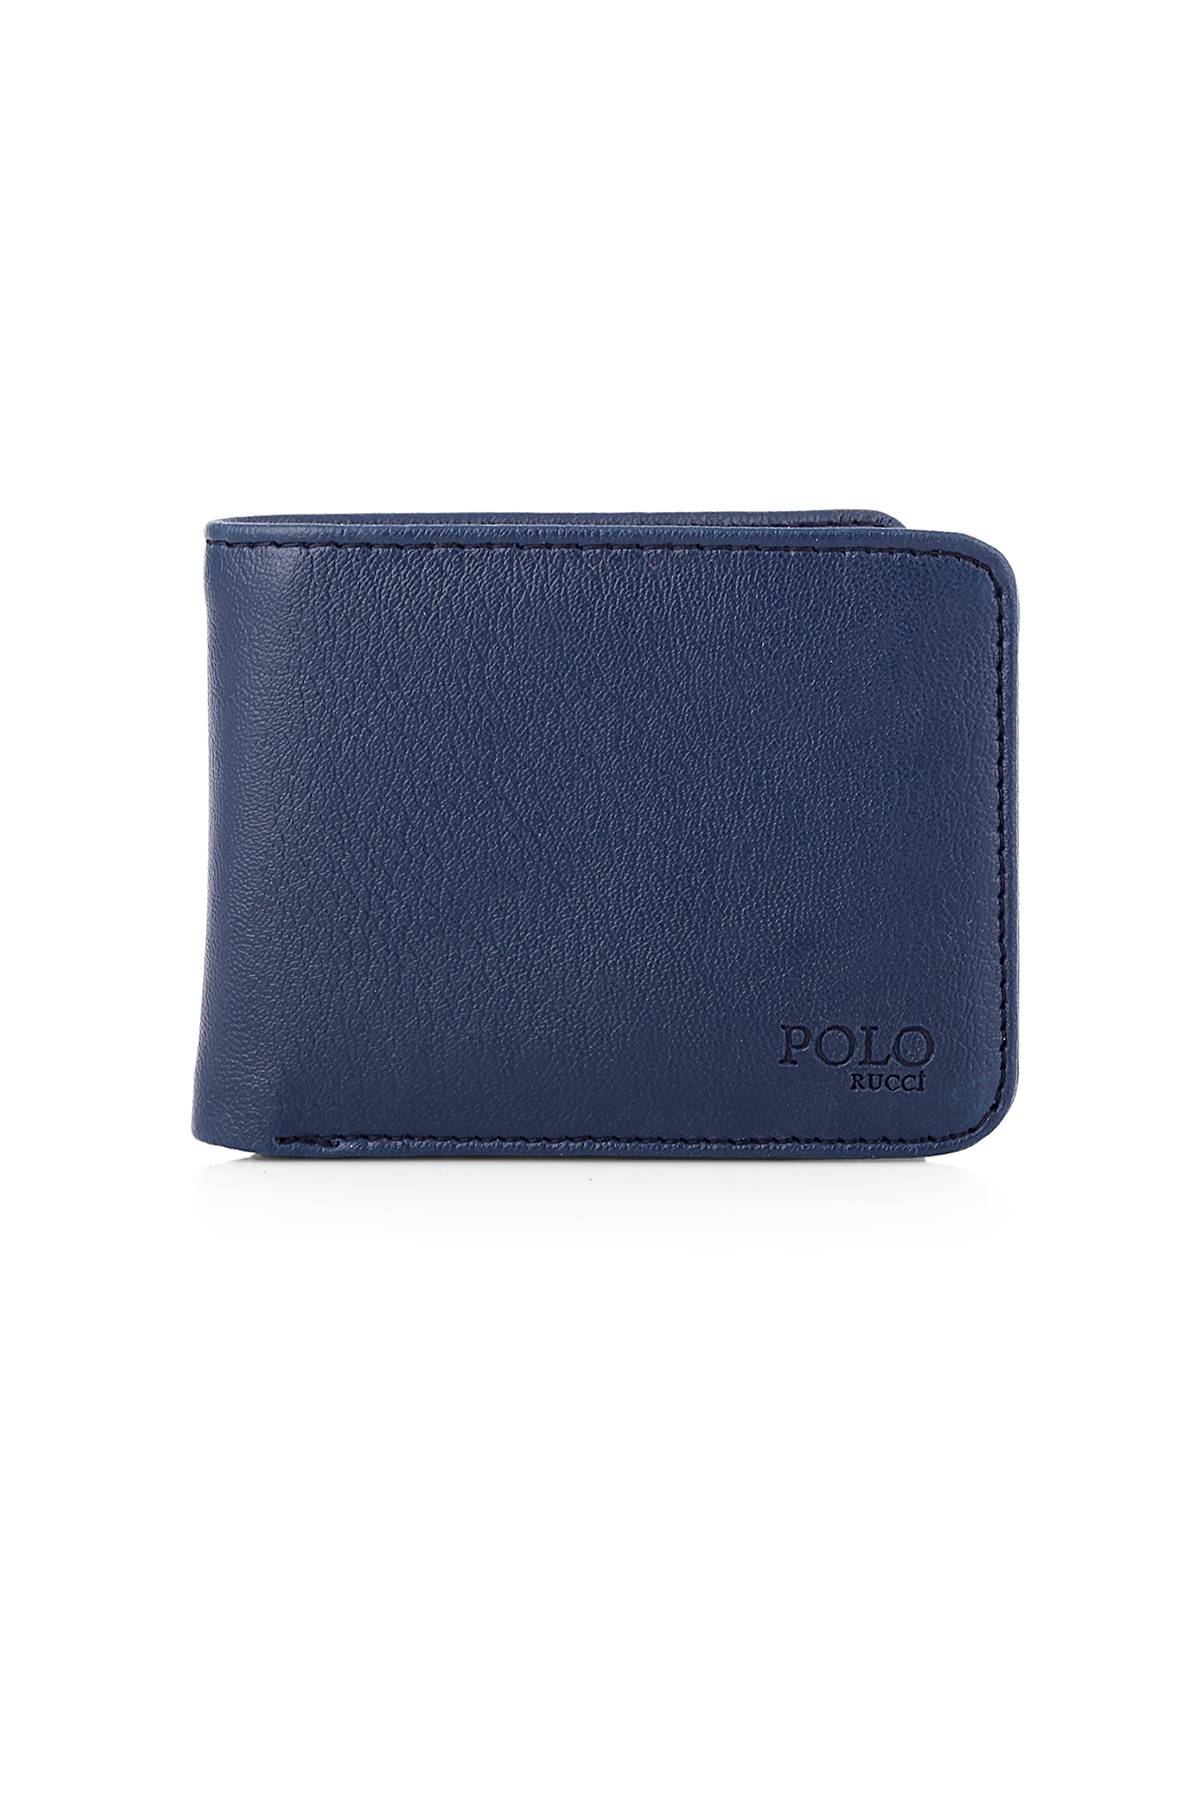 Polo Rucci Kapıda Ödeme Erkek Kişiye Özel Hediye Paketli   SETE-3016-CDN-L